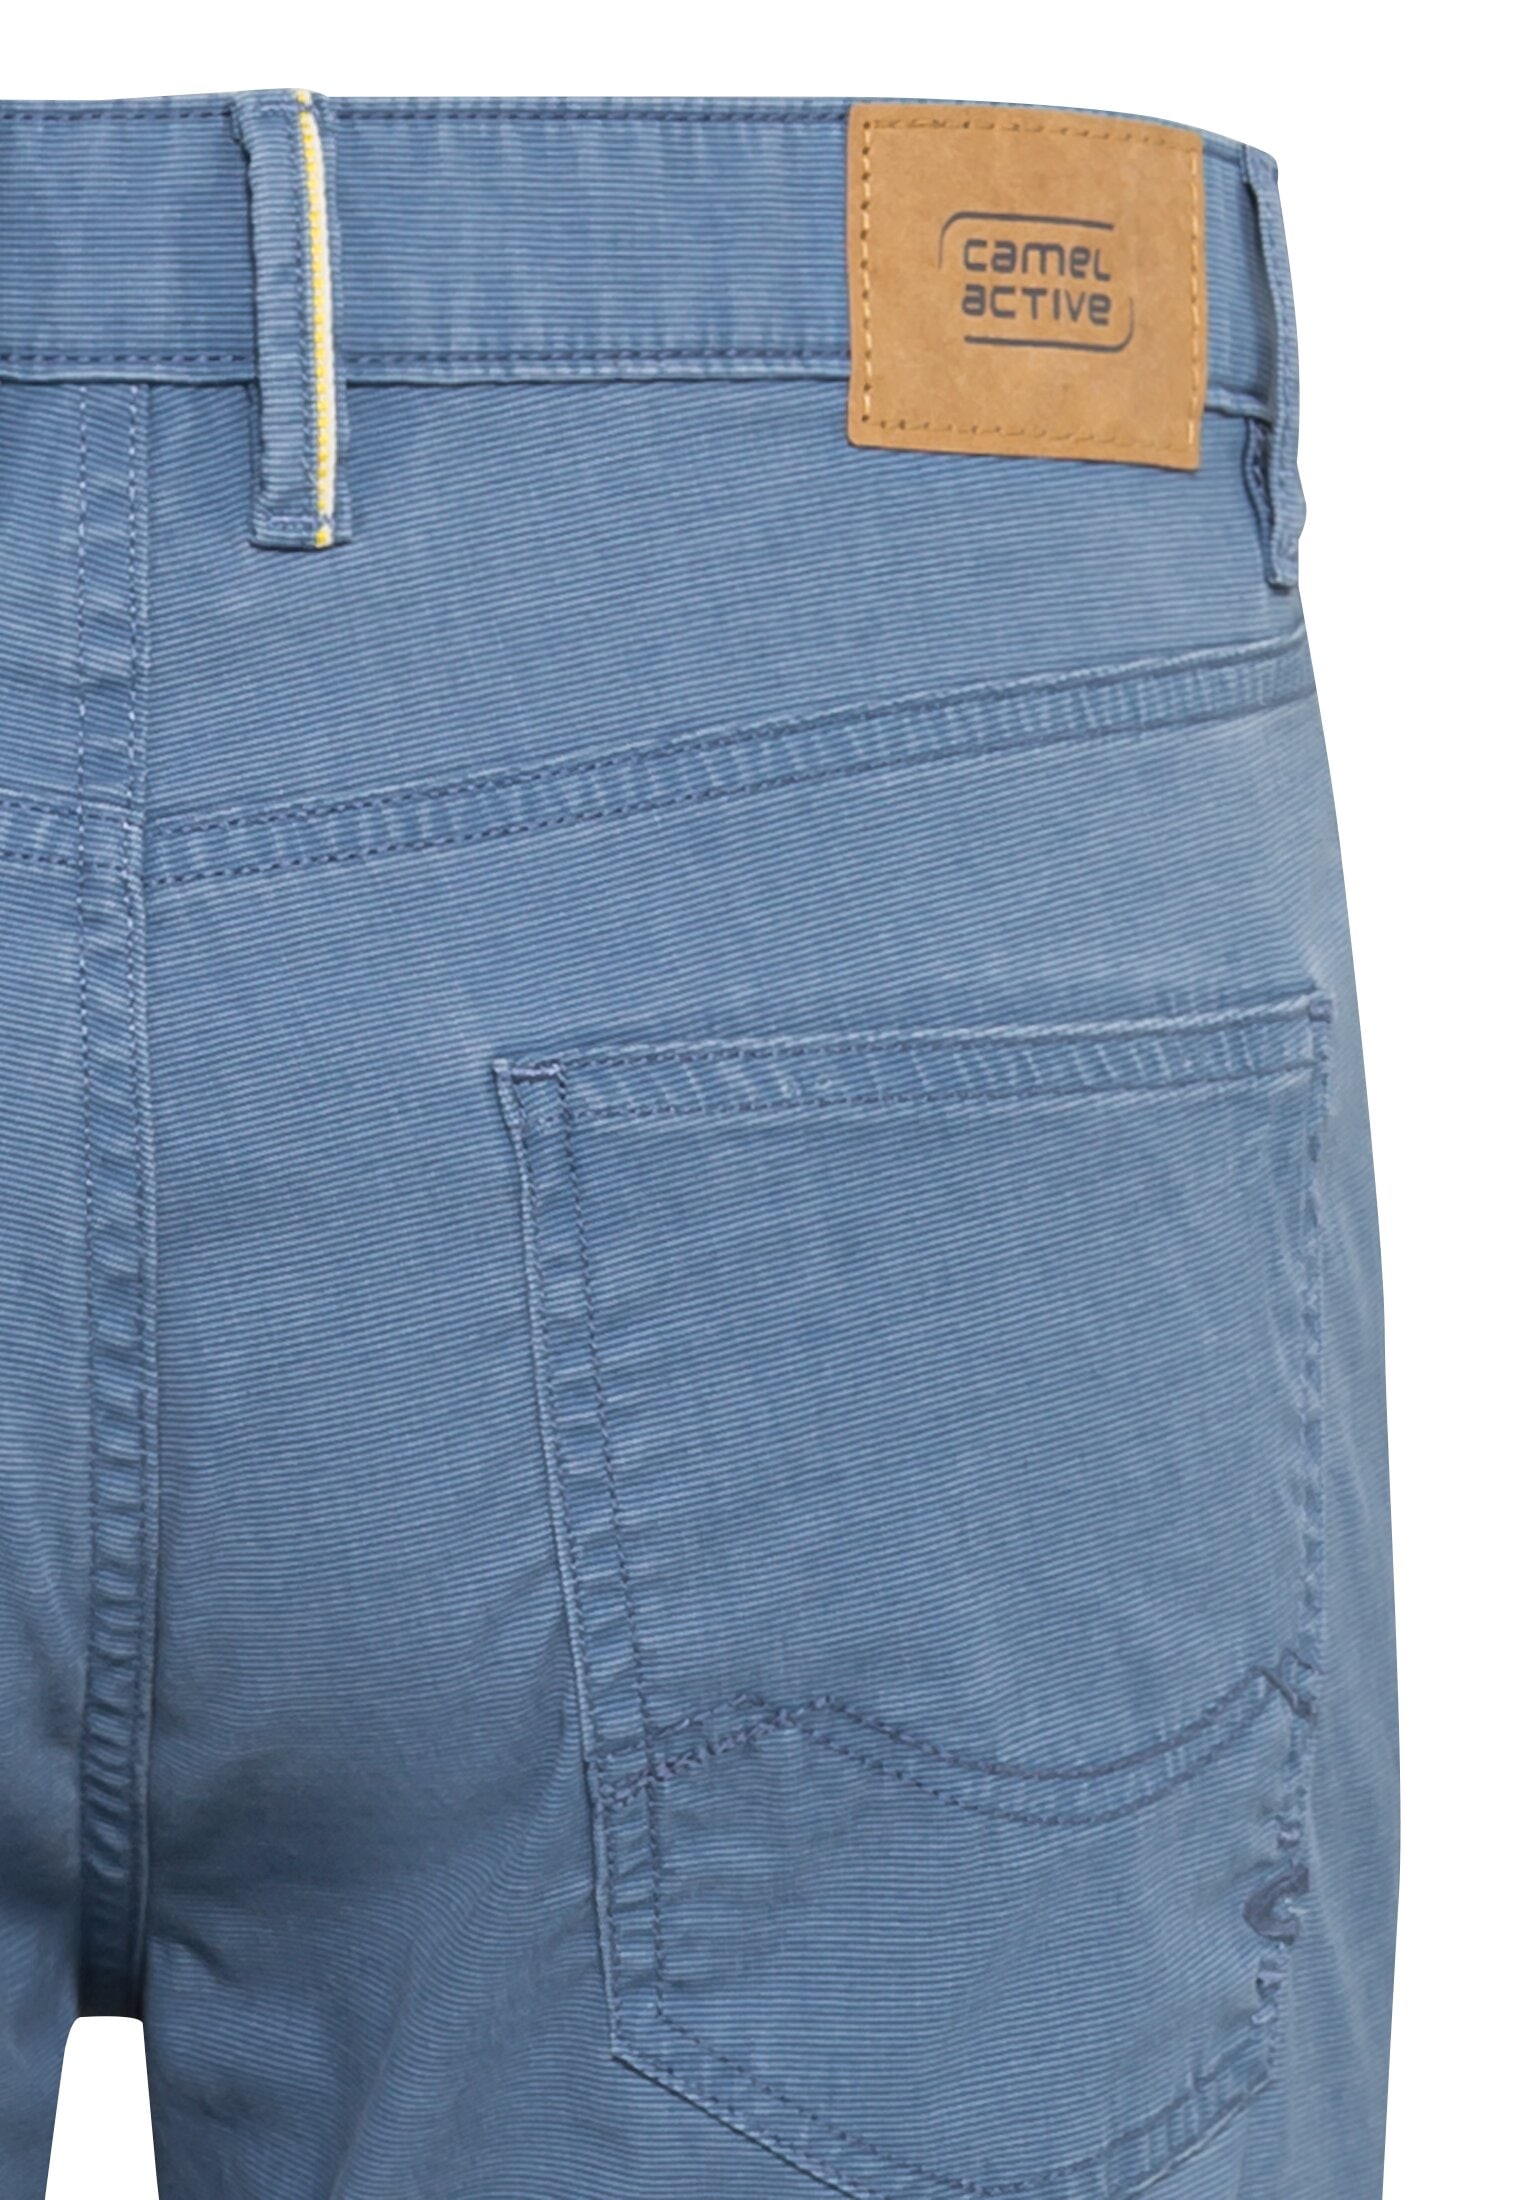 camel active 5-Pocket-Jeans, mit Ledermarkenlabel